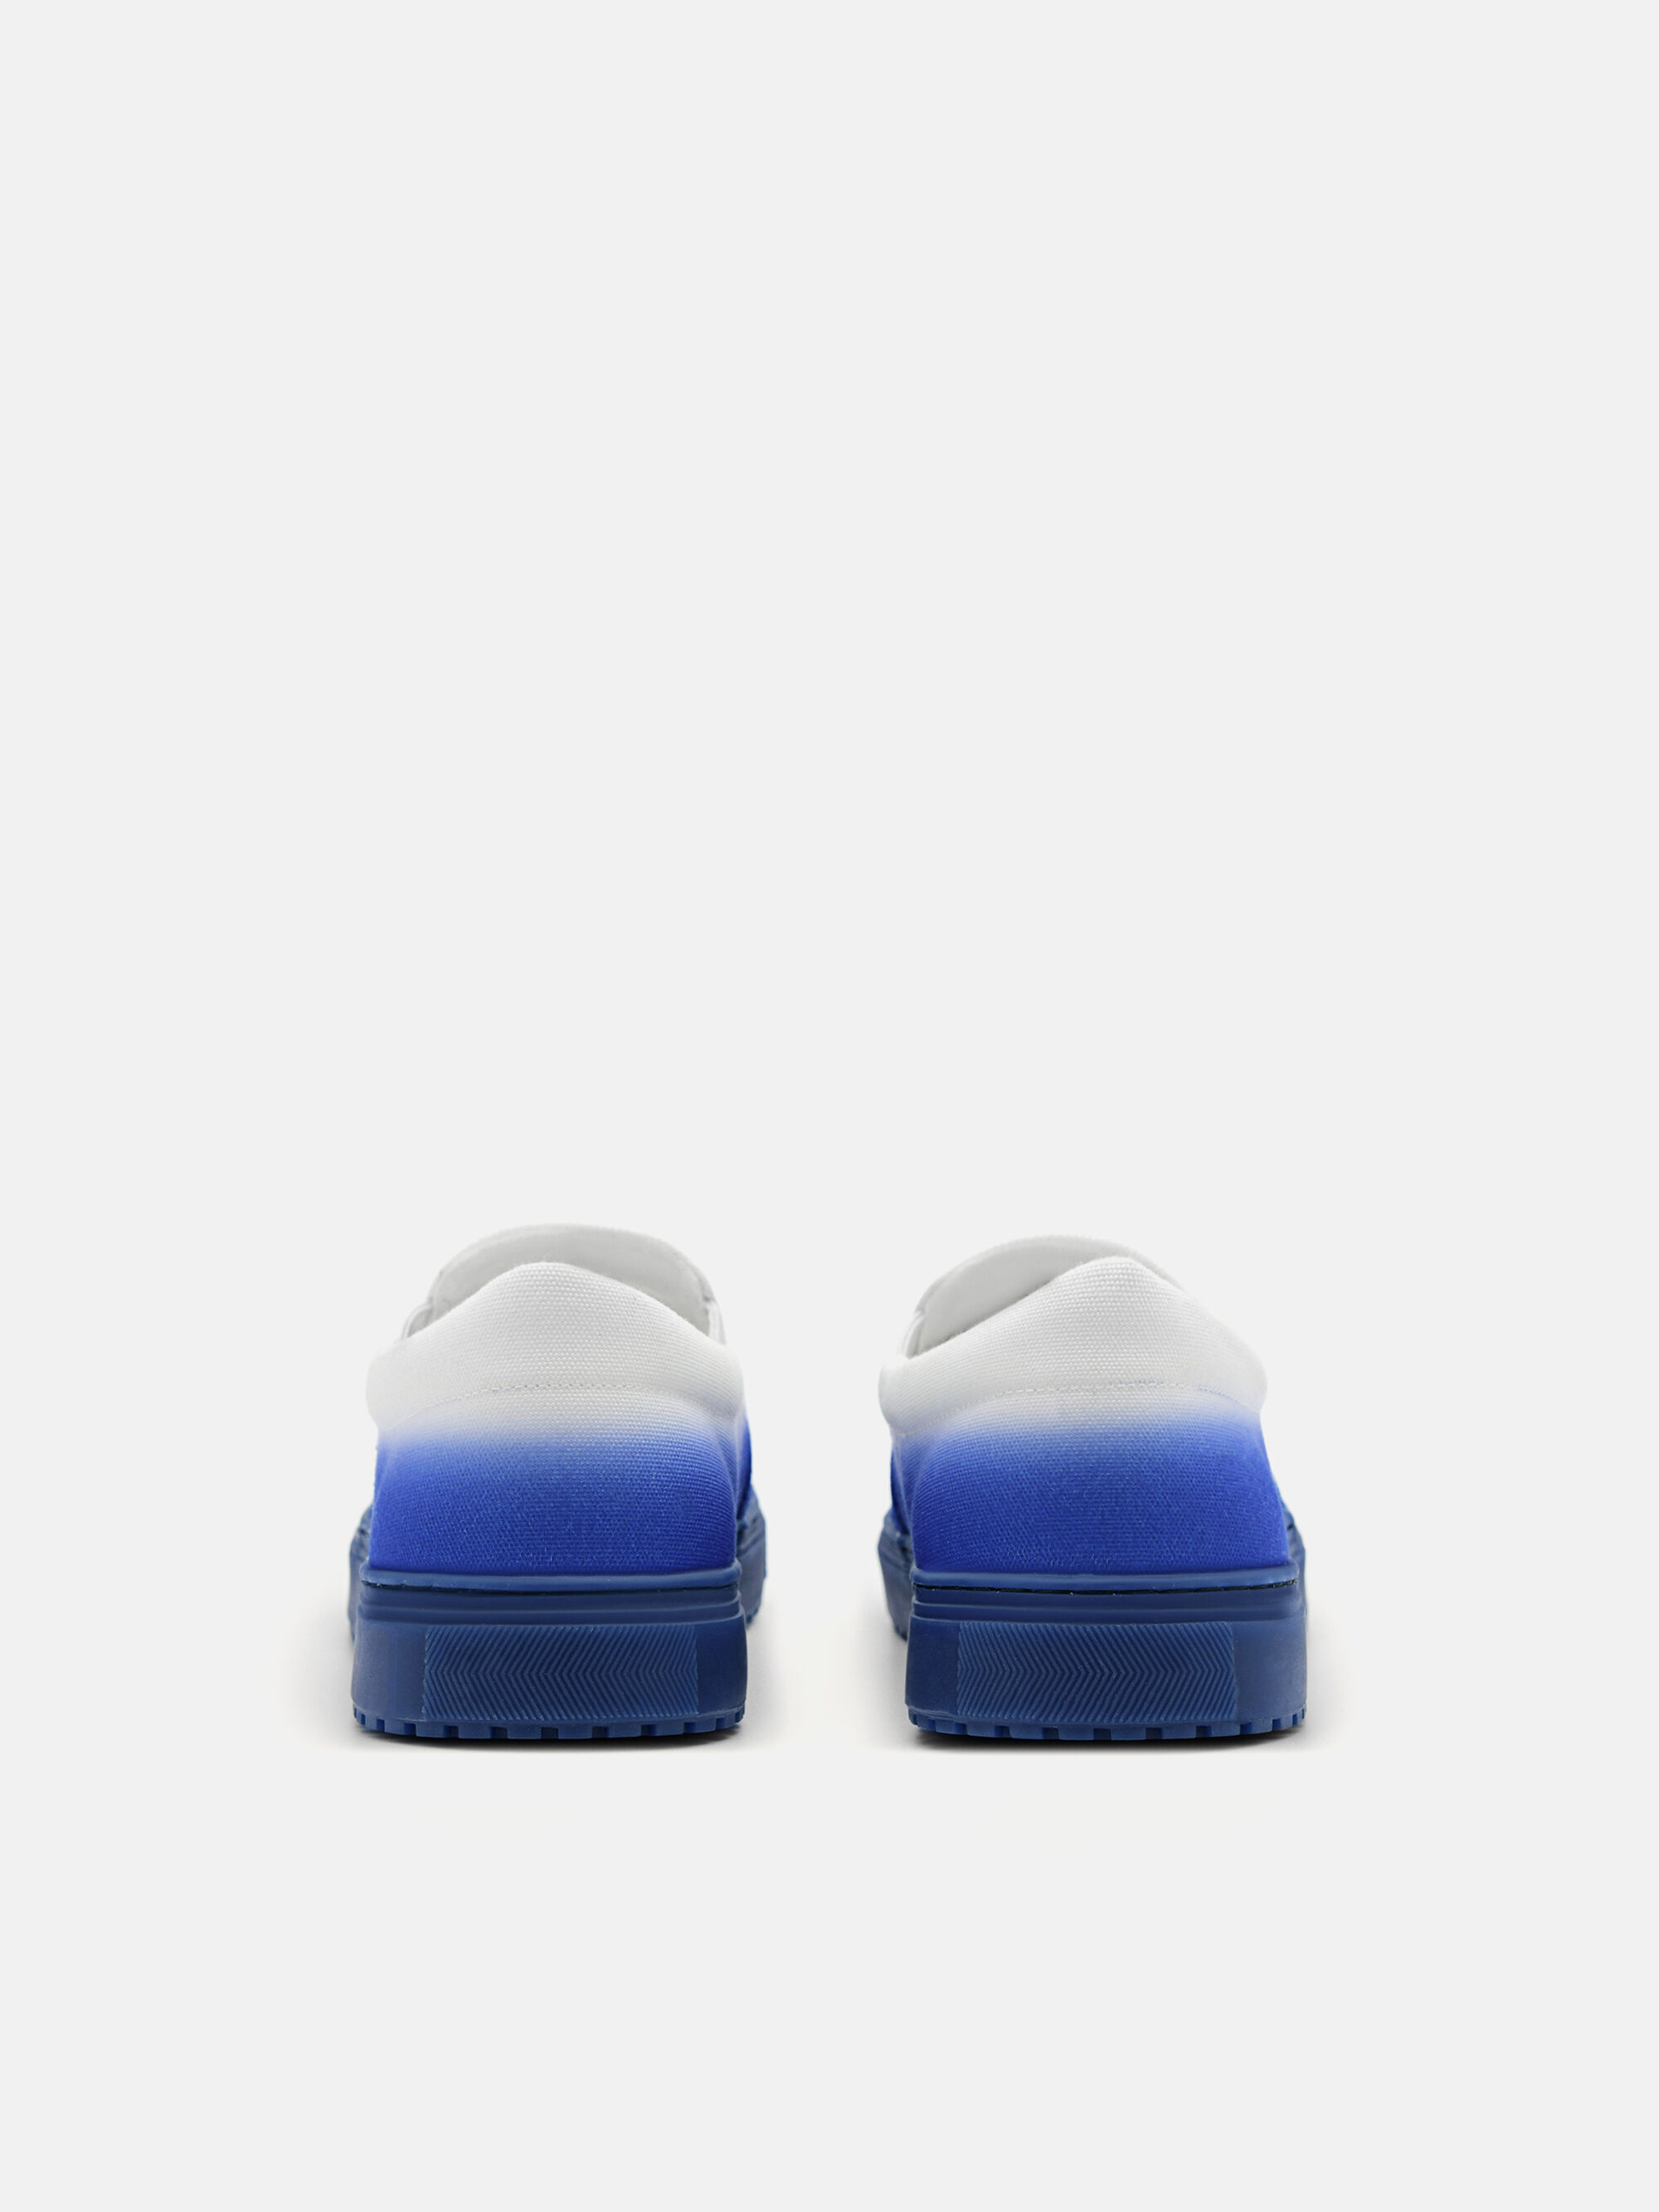 Zia Slip-On Sneakers, Blue